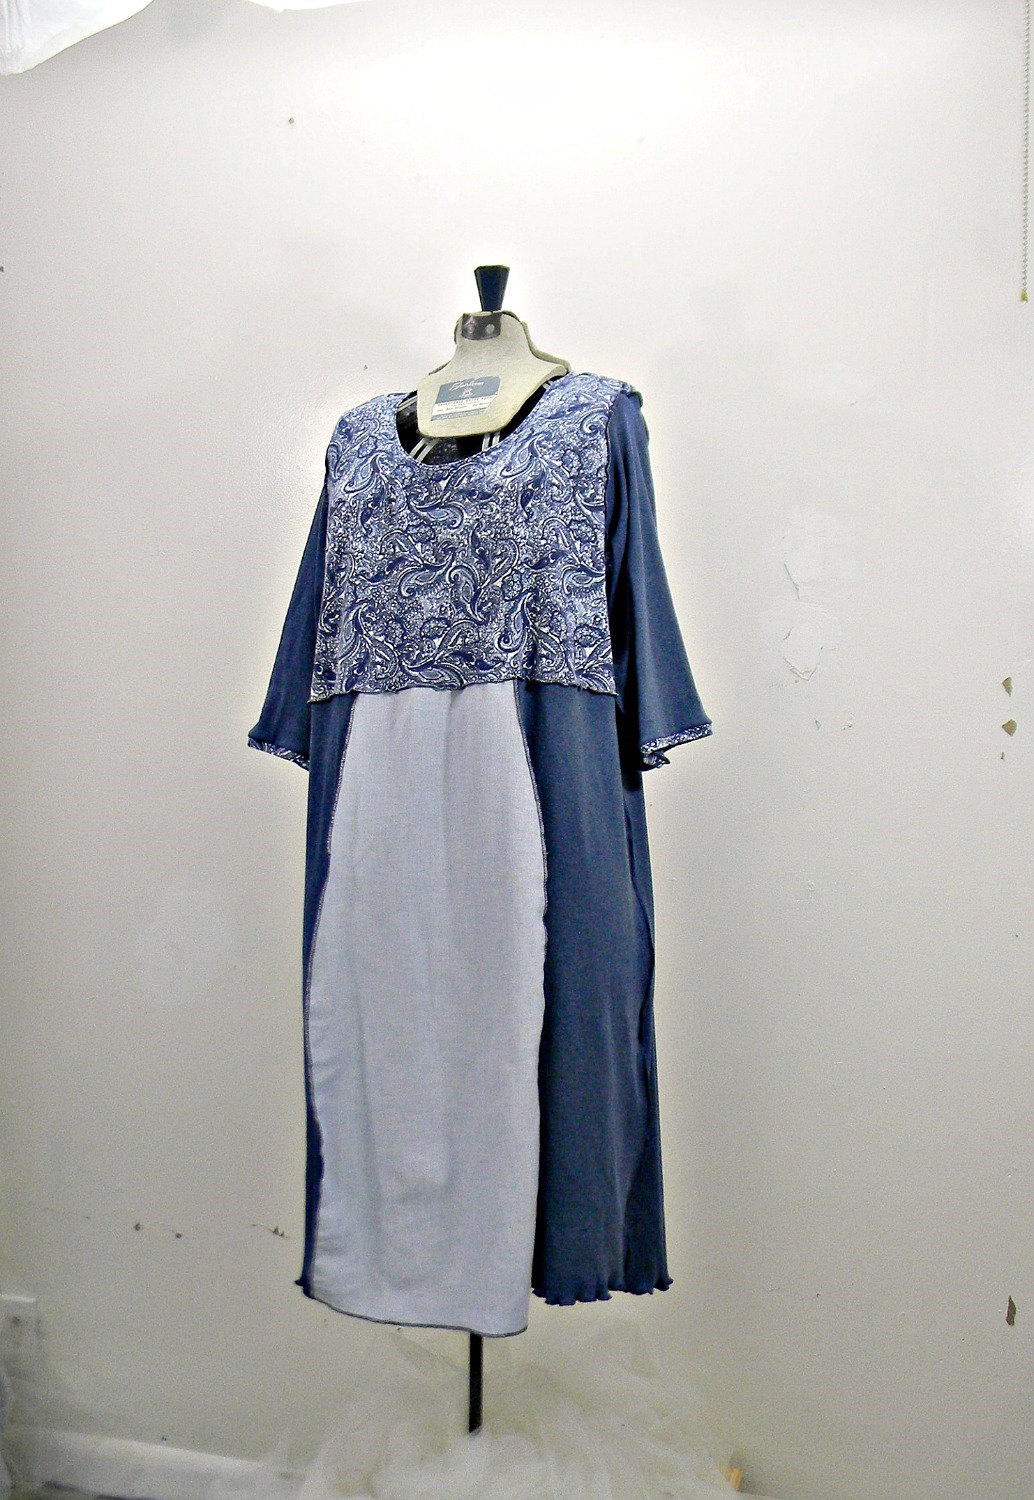 Plus Size 3X Dress / Womens Clothing / Upcycled Clothing